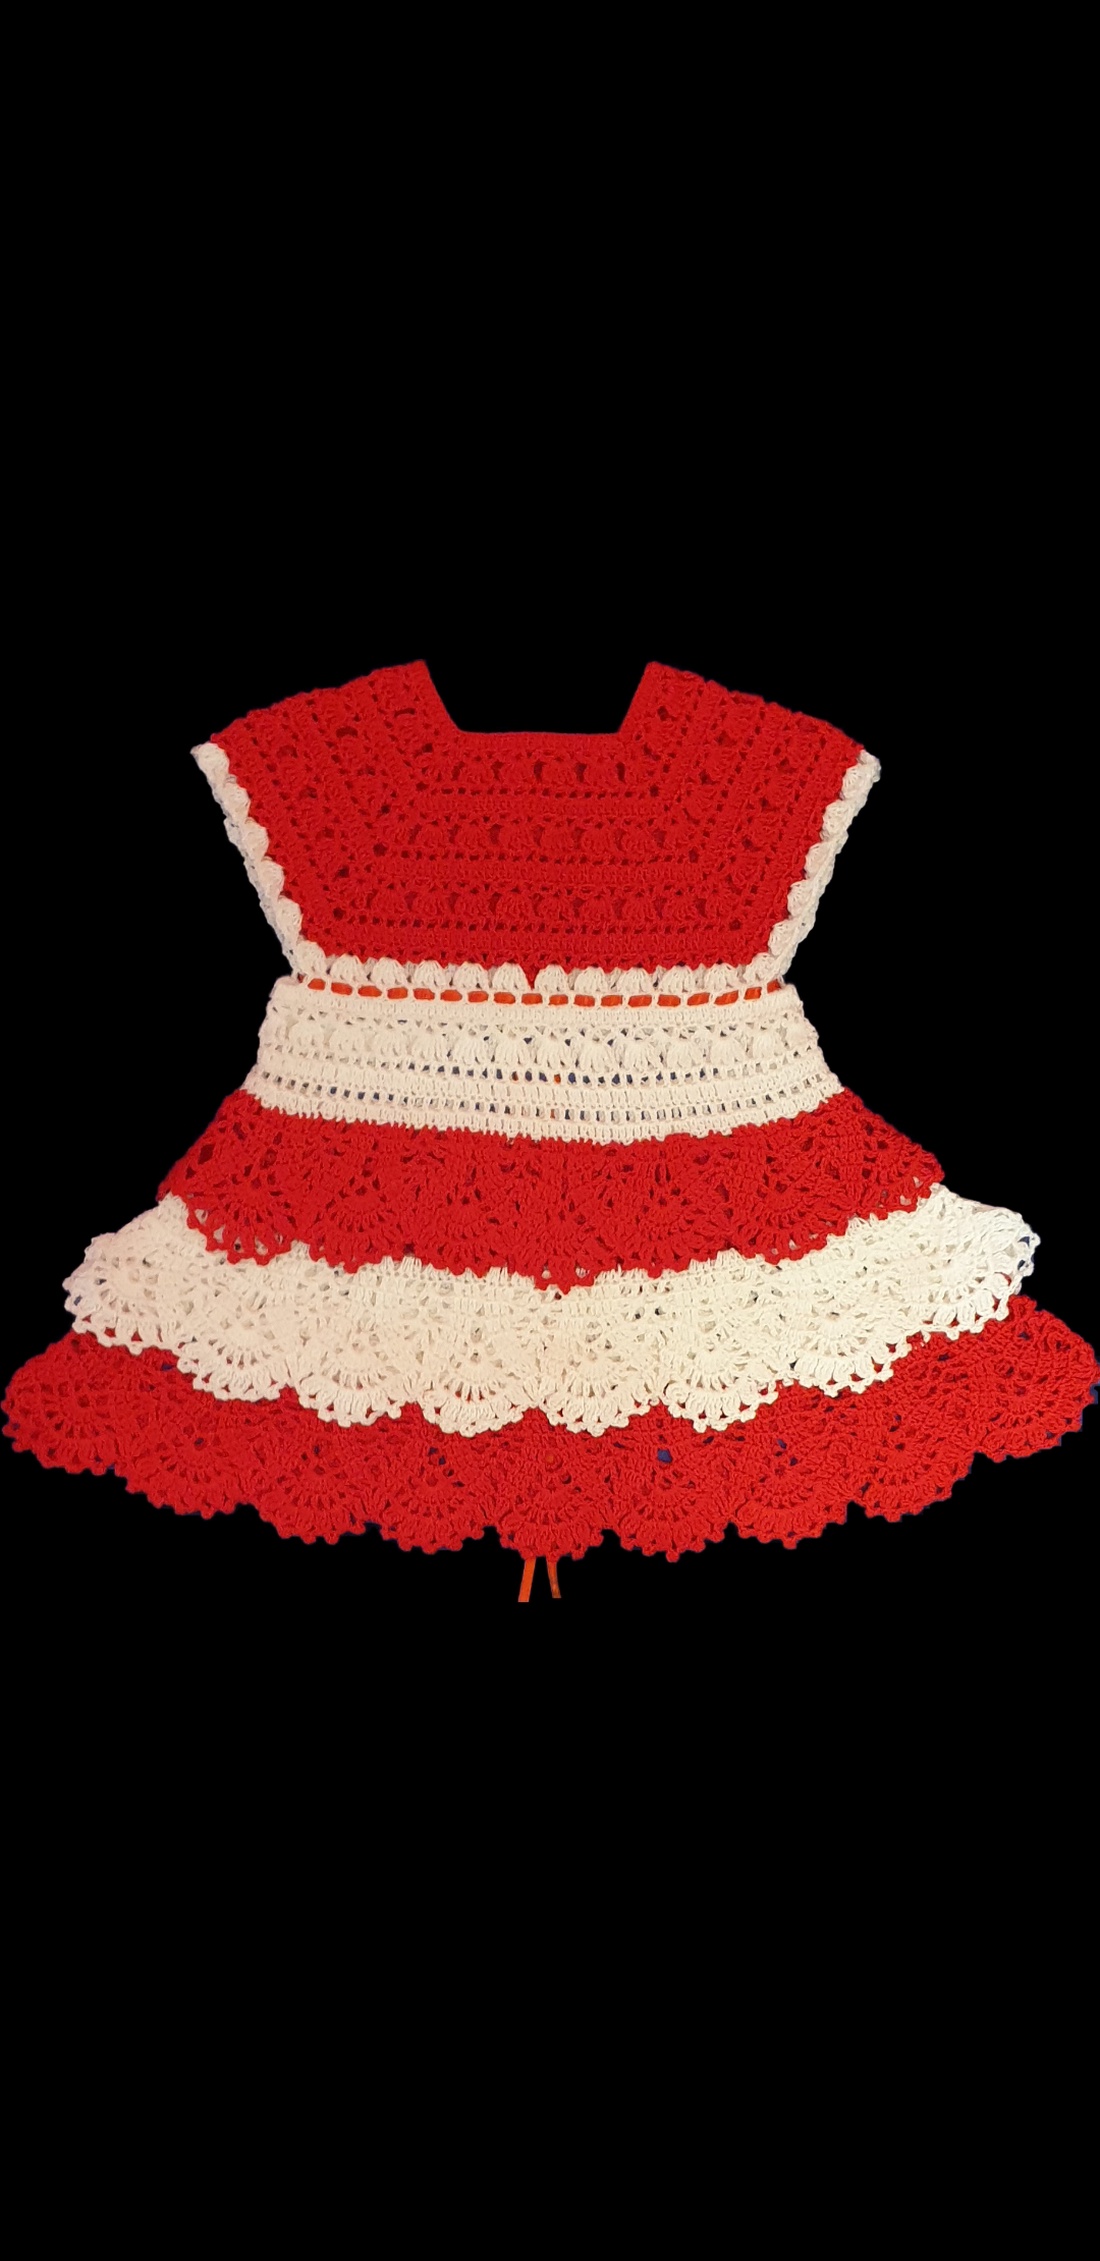 Rochiță crosetata pentru fetițe  - îmbrăcăminte și modă - haine bebeluși, haine copii - rochii fetițe - Artynos.ro